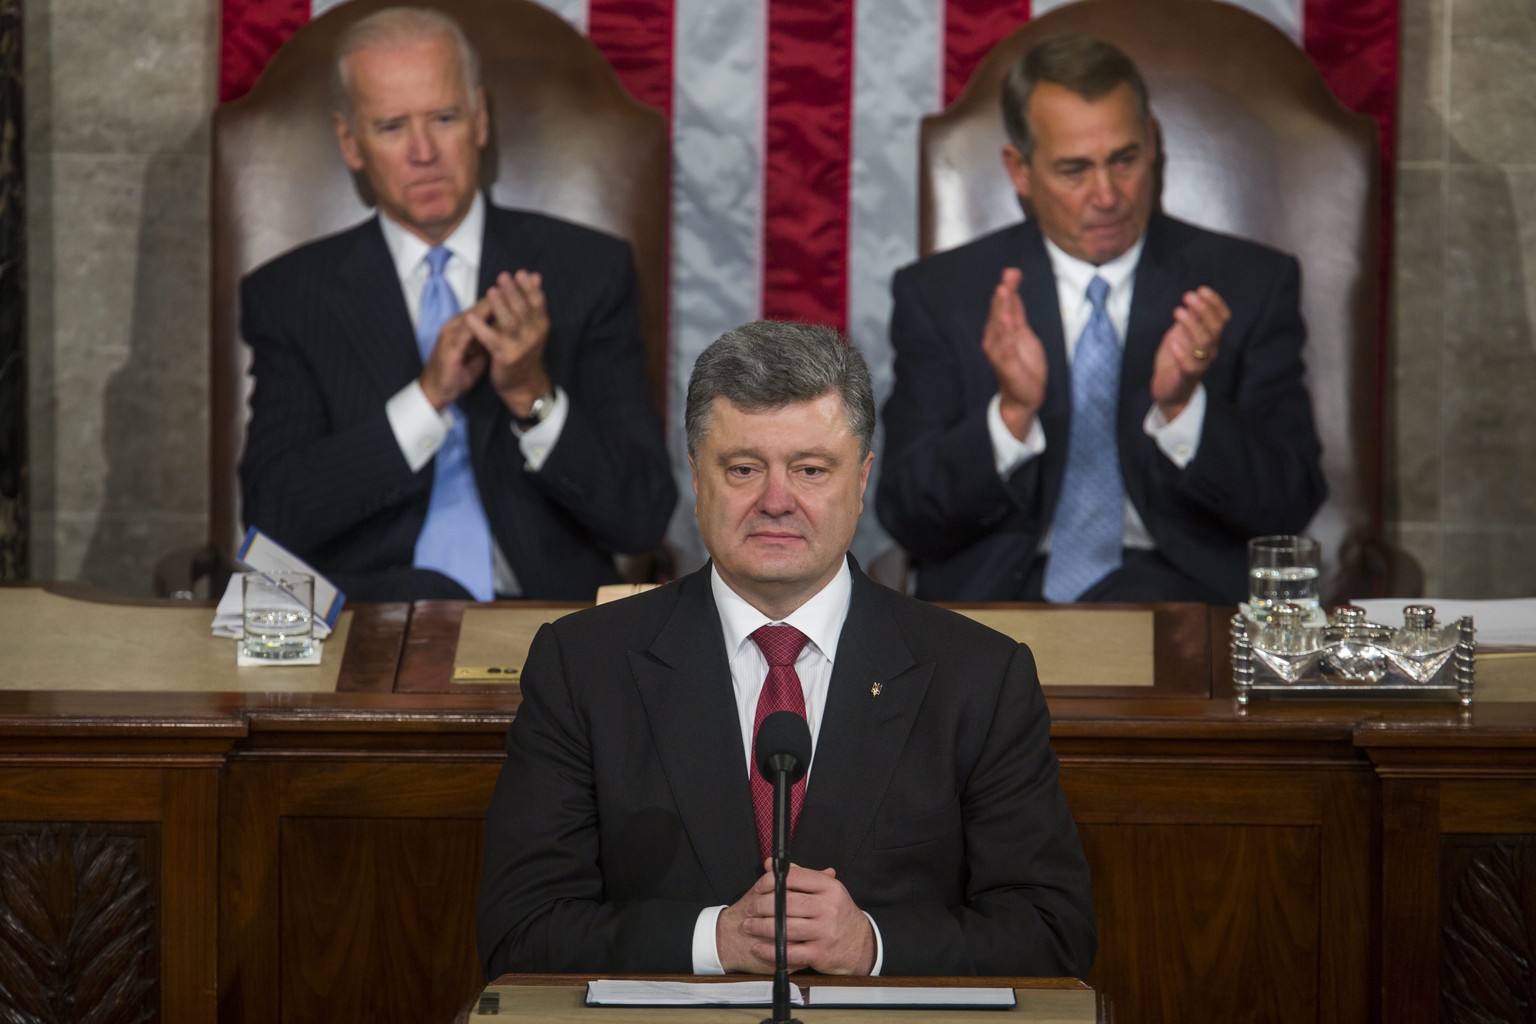 Poroschenko bei seiner Rede vor dem US-Kongress. Hinter ihm US-Vize Joe Biden und der Sprecher des Repräsentantenhauses John Boehner